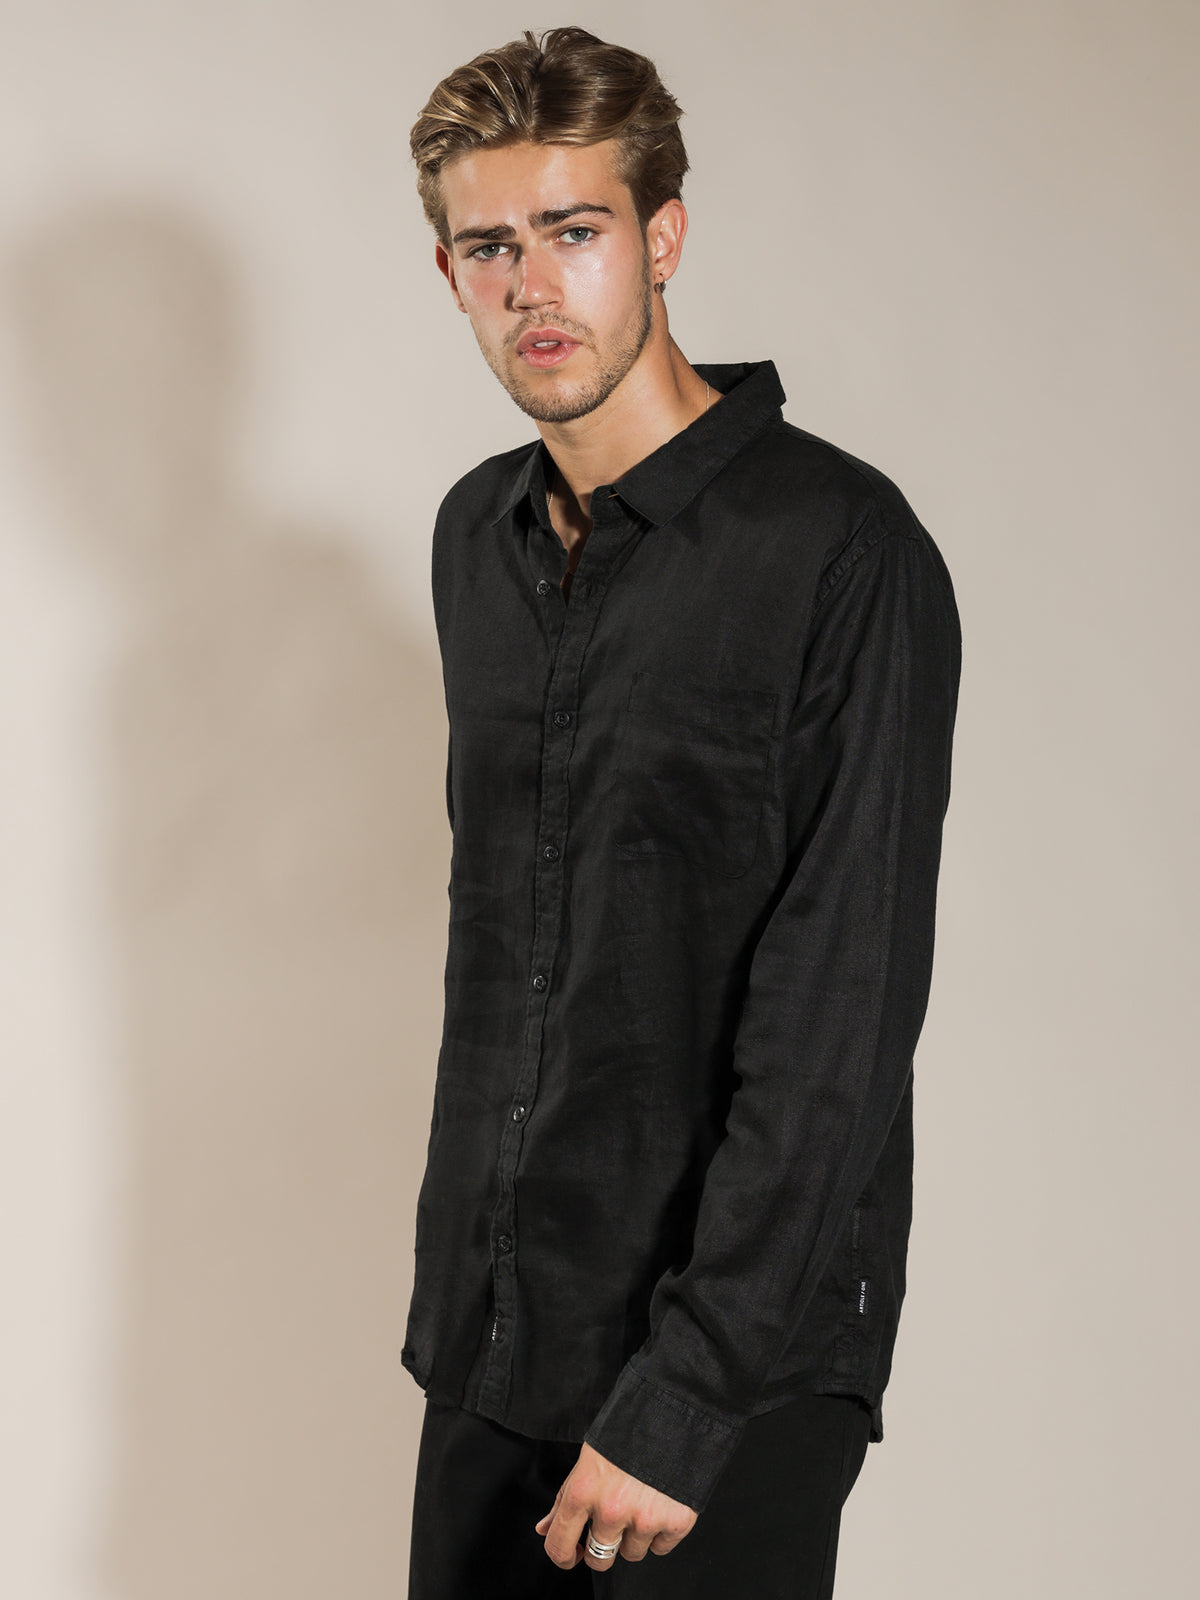 Nelson Linen Long Sleeve Shirt in Black